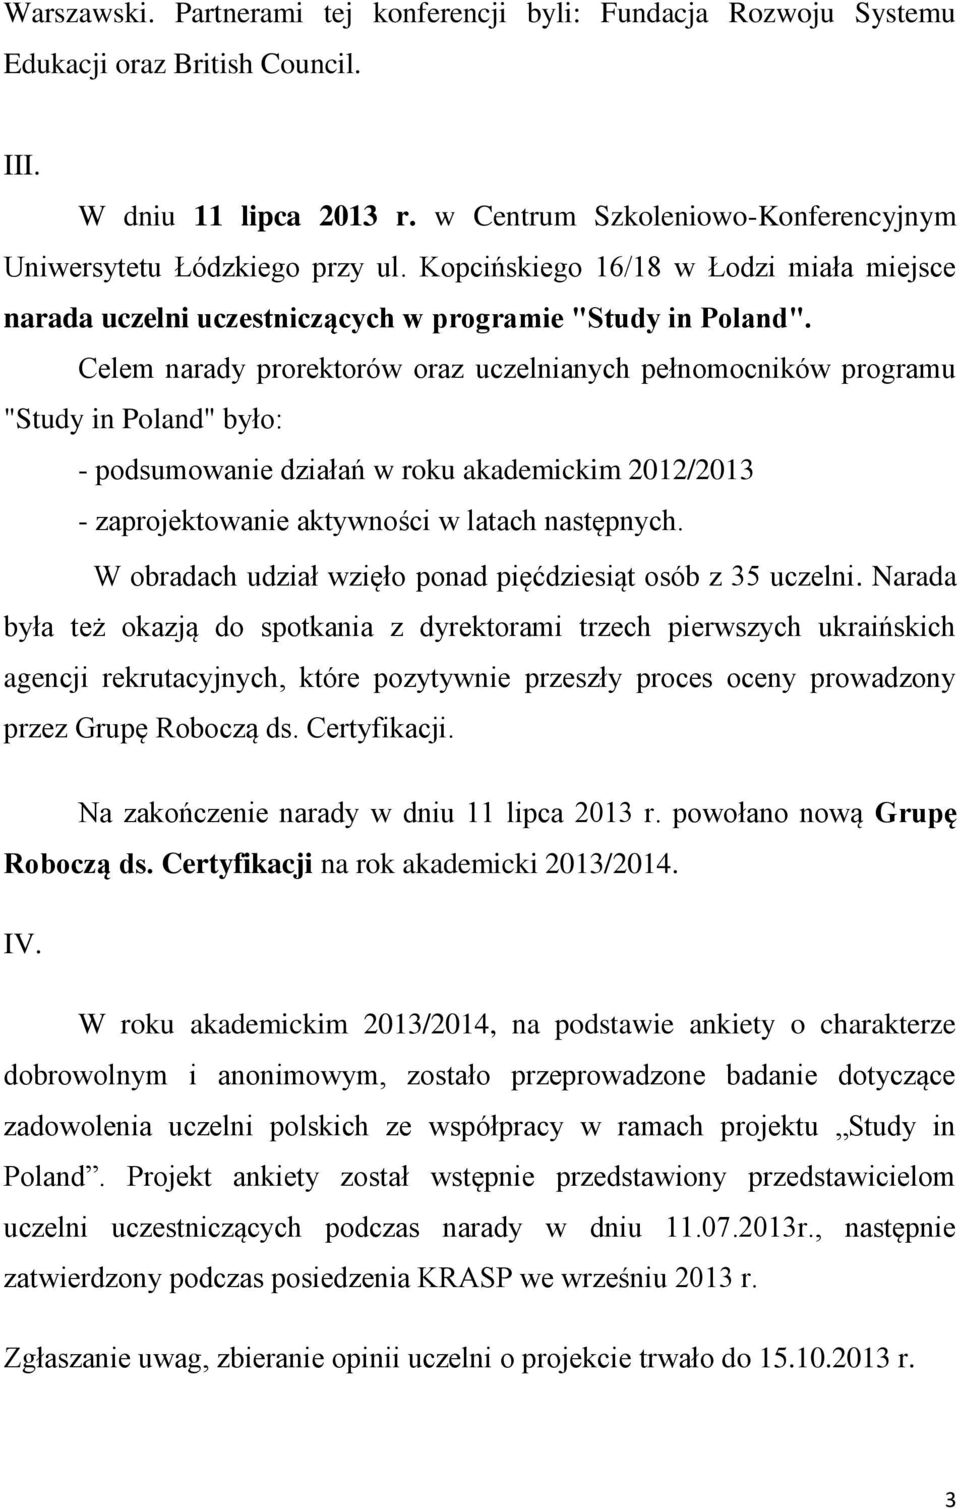 Celem narady prorektorów oraz uczelnianych pełnomocników programu "Study in Poland" było: - podsumowanie działań w roku akademickim 2012/2013 - zaprojektowanie aktywności w latach następnych.